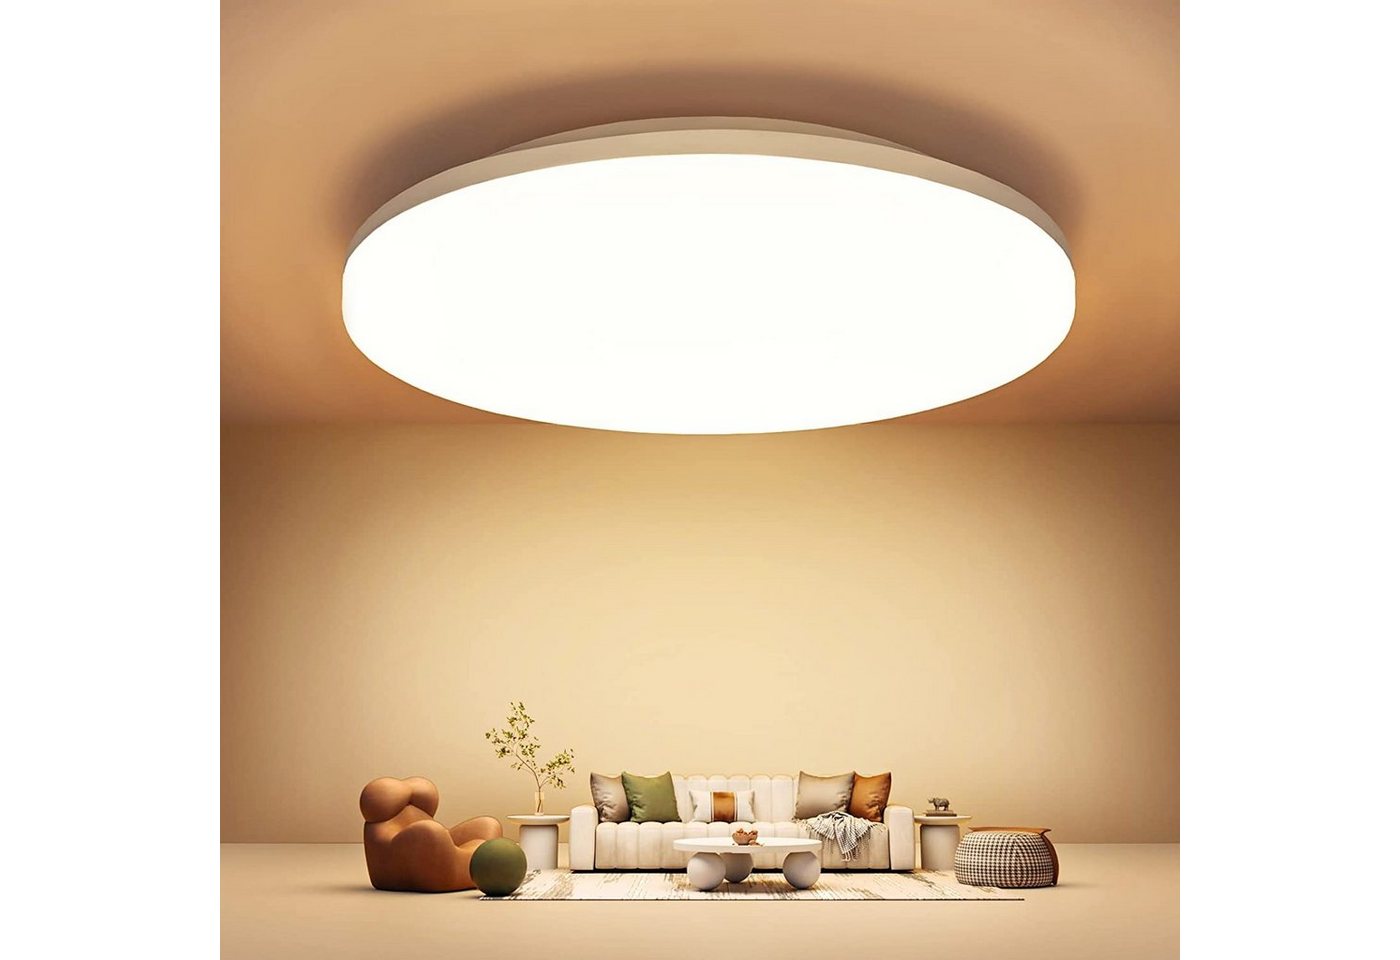 EUARY LED Deckenspots Led Deckenlampe Deckenleuchte Flach Lampen Ceiling Light Küchenlampe, Deckenbeleuchtung 2700K Warmweiss IP5418W 2200LM für Bad Flur Keller von EUARY